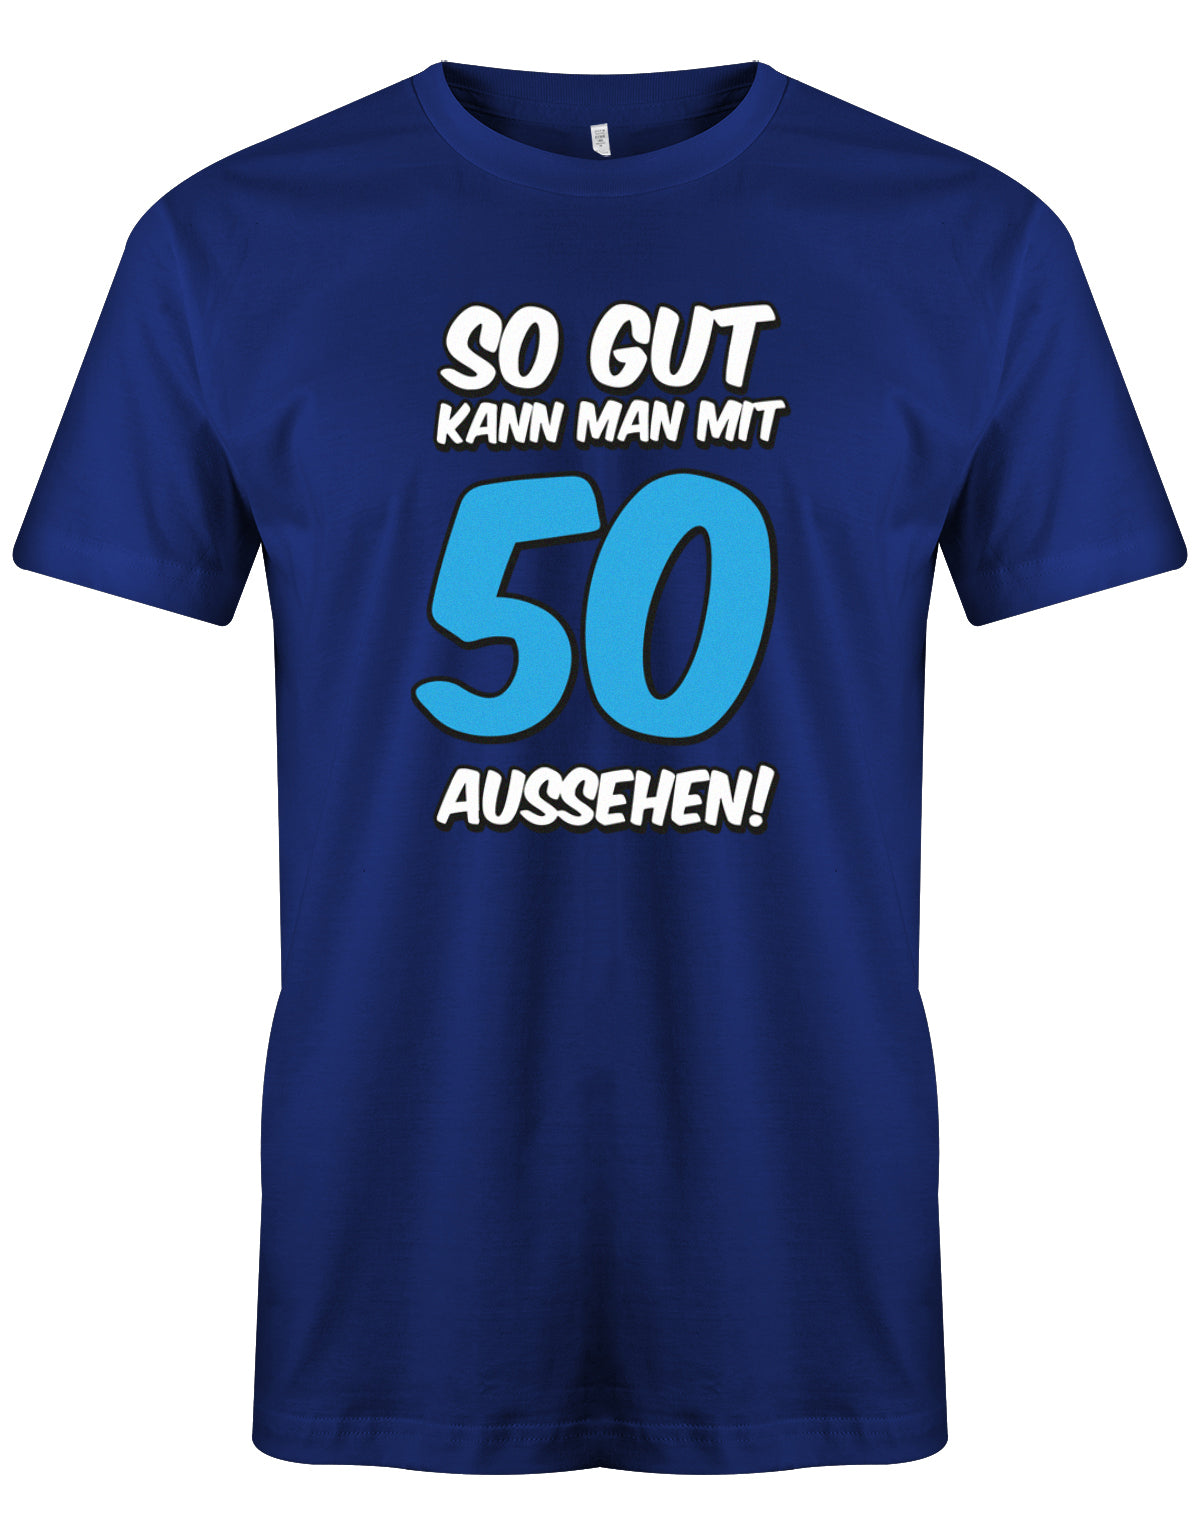 Lustiges T-Shirt zum 50 Geburtstag für den Mann Bedruckt mit So gut kann man mit 50 aussehen. Große blaue 50 Royalblau